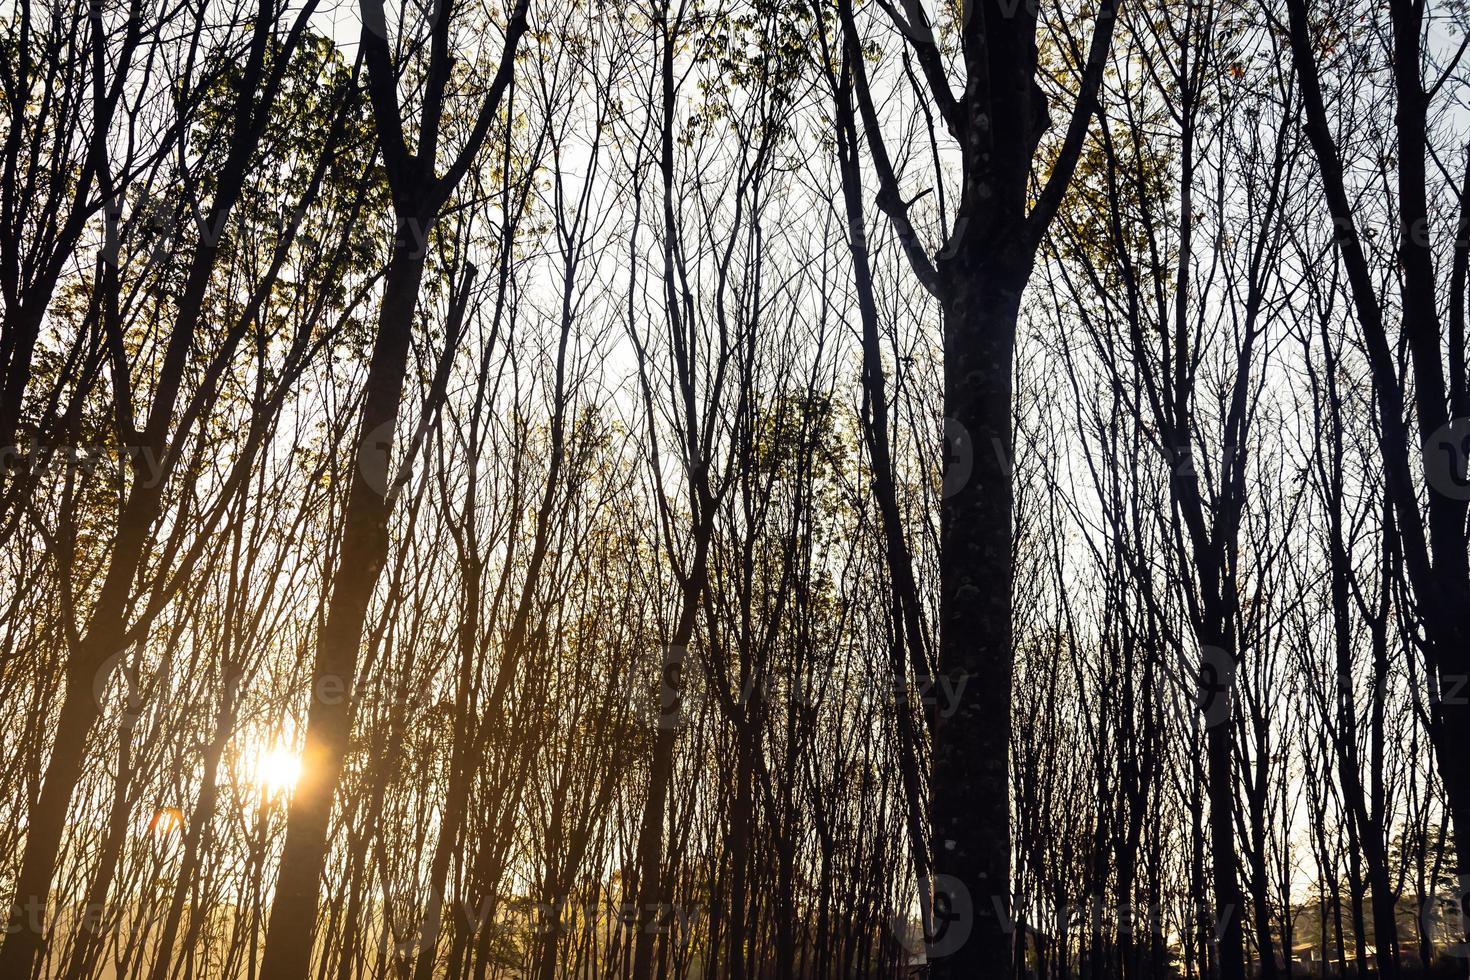 arbres forestiers boisés rétro-éclairés par la lumière du soleil dorée avant le coucher du soleil avec des rayons de soleil se déversant à travers les arbres sur le sol forestier illuminant les branches d'arbres photo